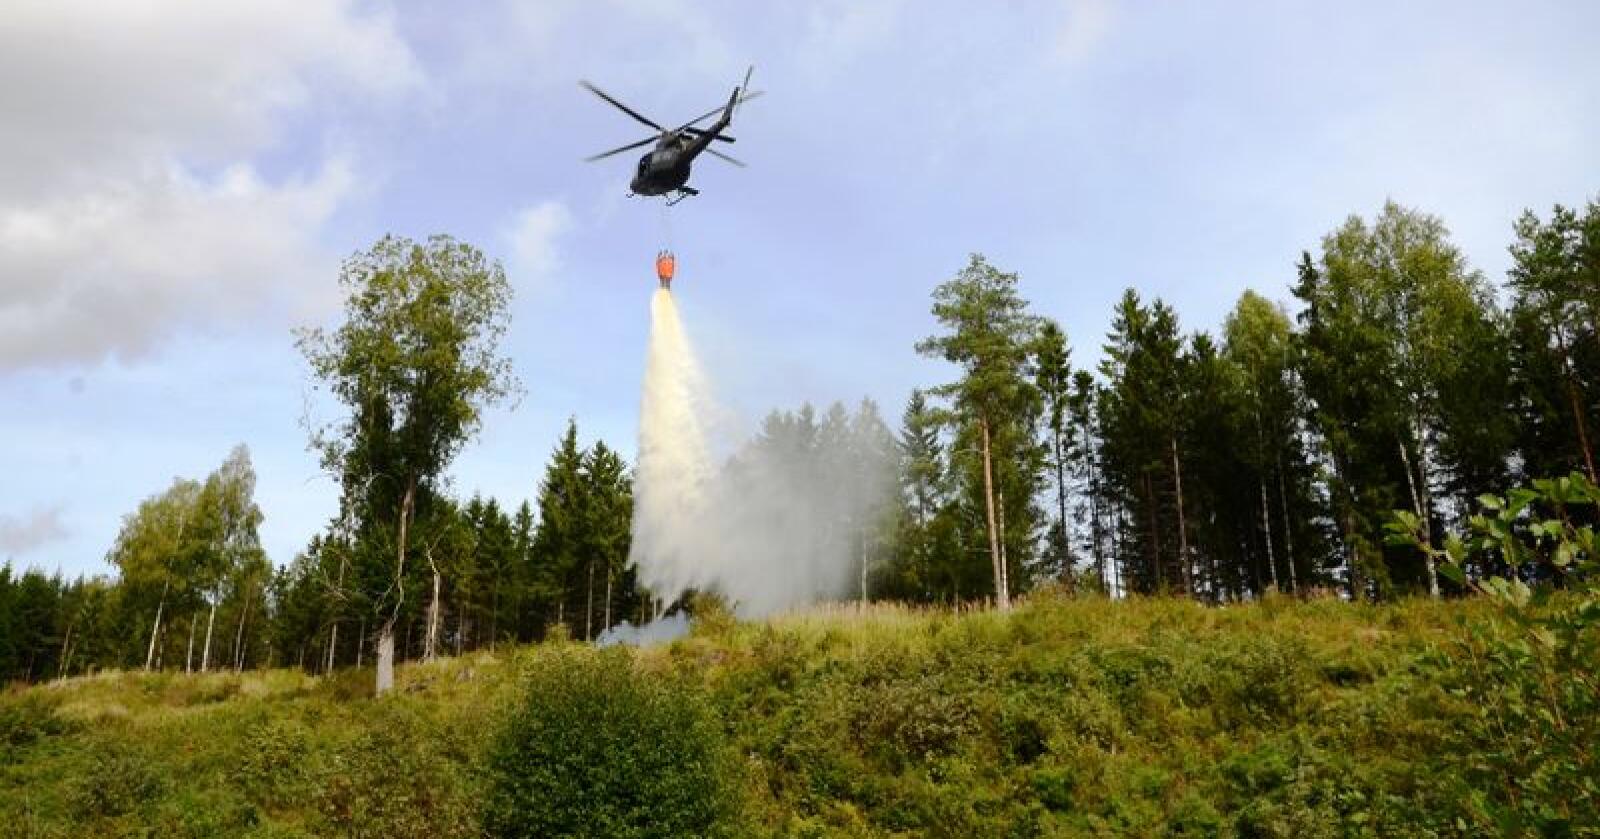 EU bidro med mye hjelp under de omfattende skogbrannene i Sverige i sommer. Det samme gjorde Norge. Bildet er fra en øvelse som Follo og Øvre Østfold sikringslag gjennomførte. (Arkivfoto)